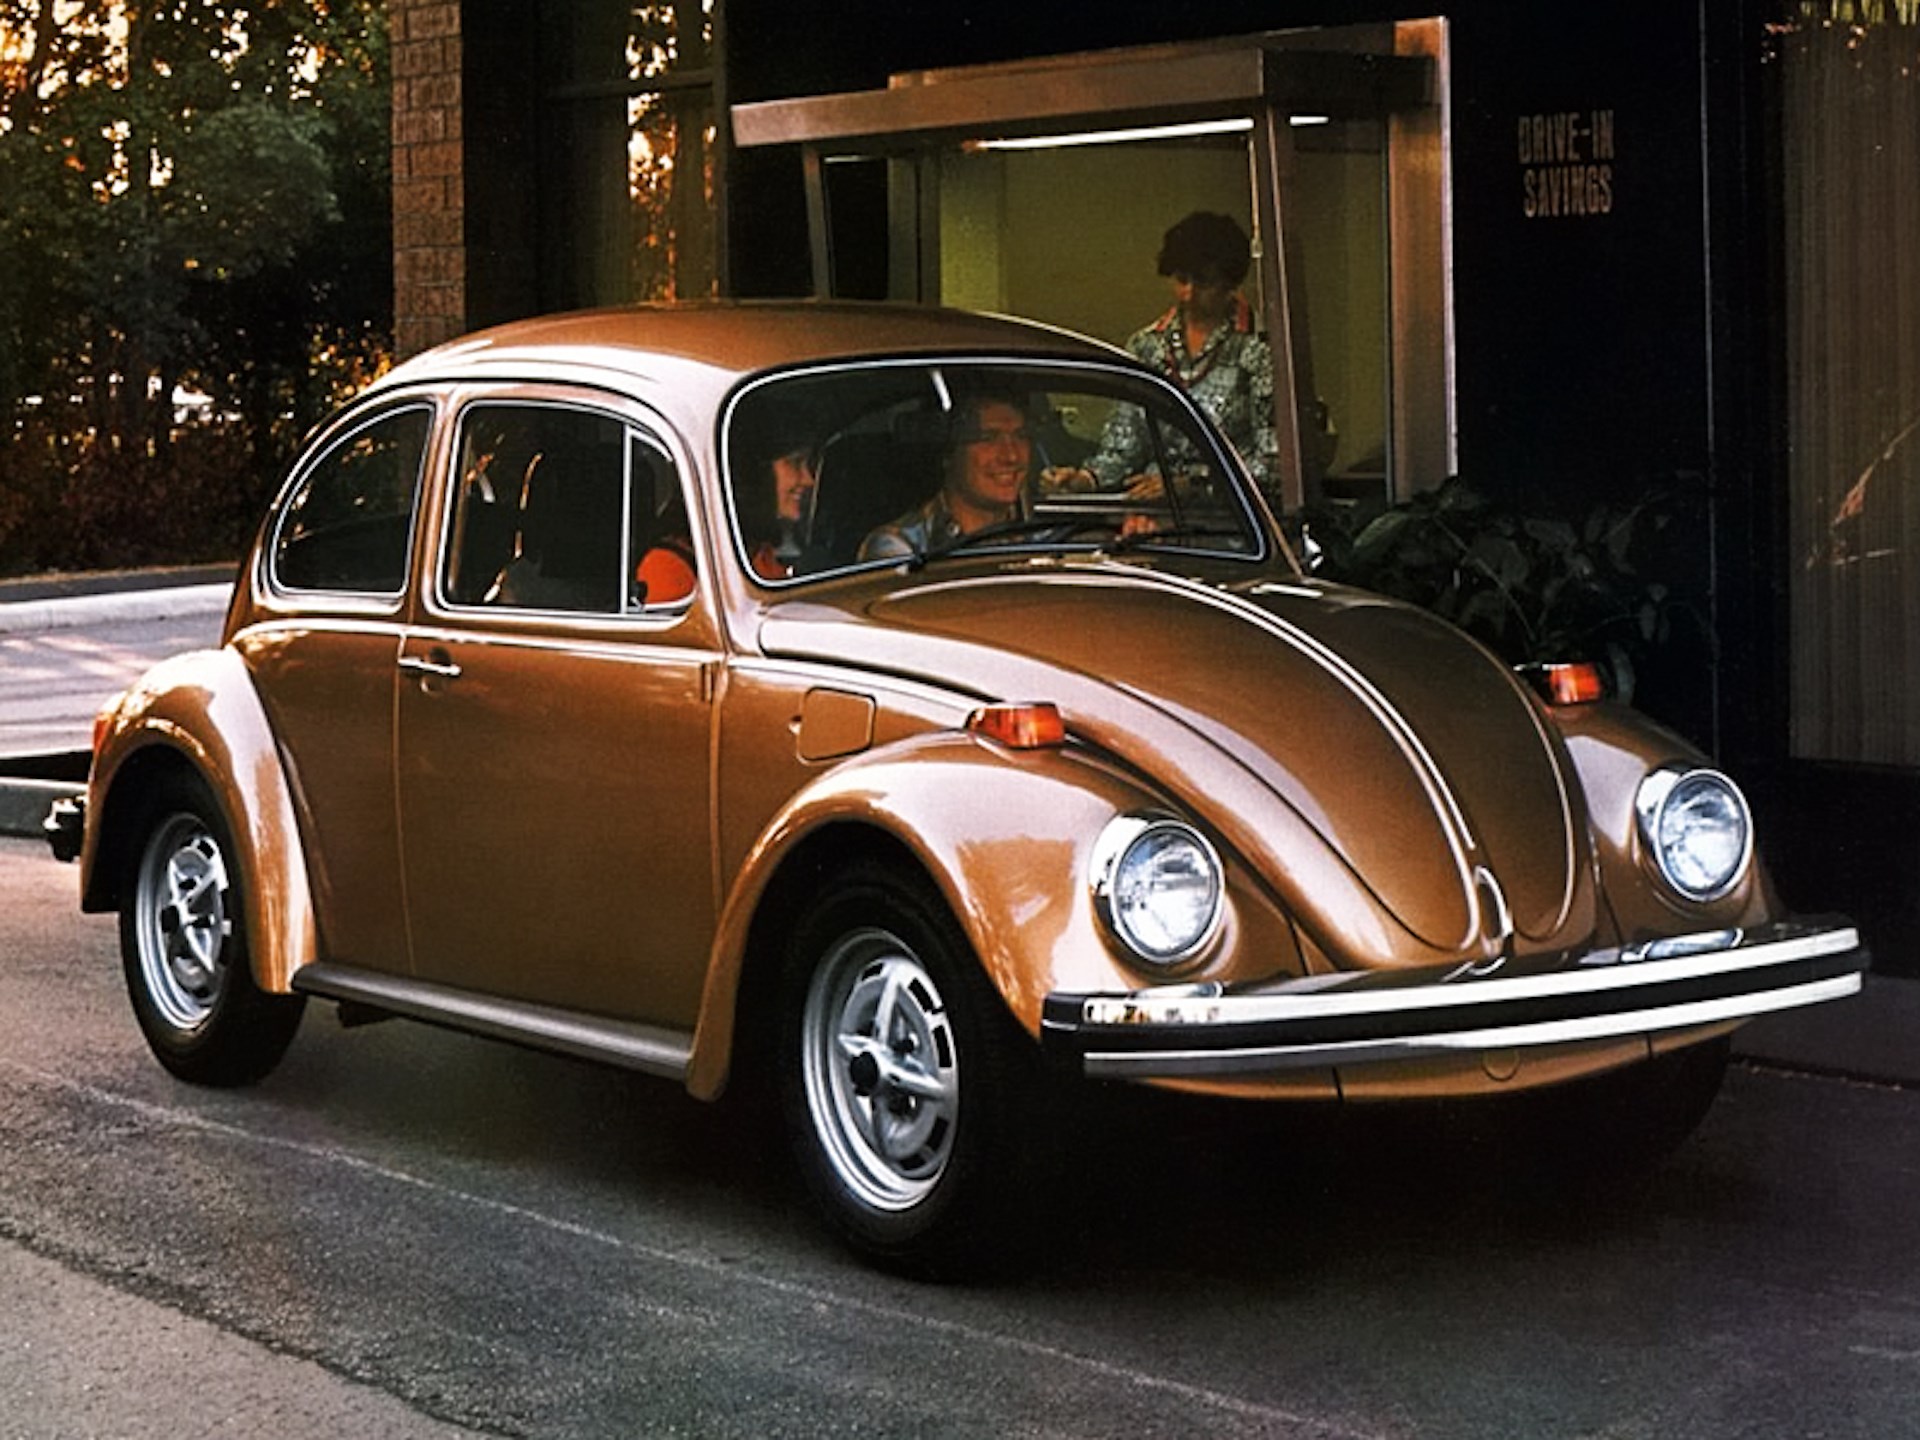 Volkswagen, Beetle tasarımını kopyalayan Çinli otomotiv şirketi Great Wall'a dava açabilir